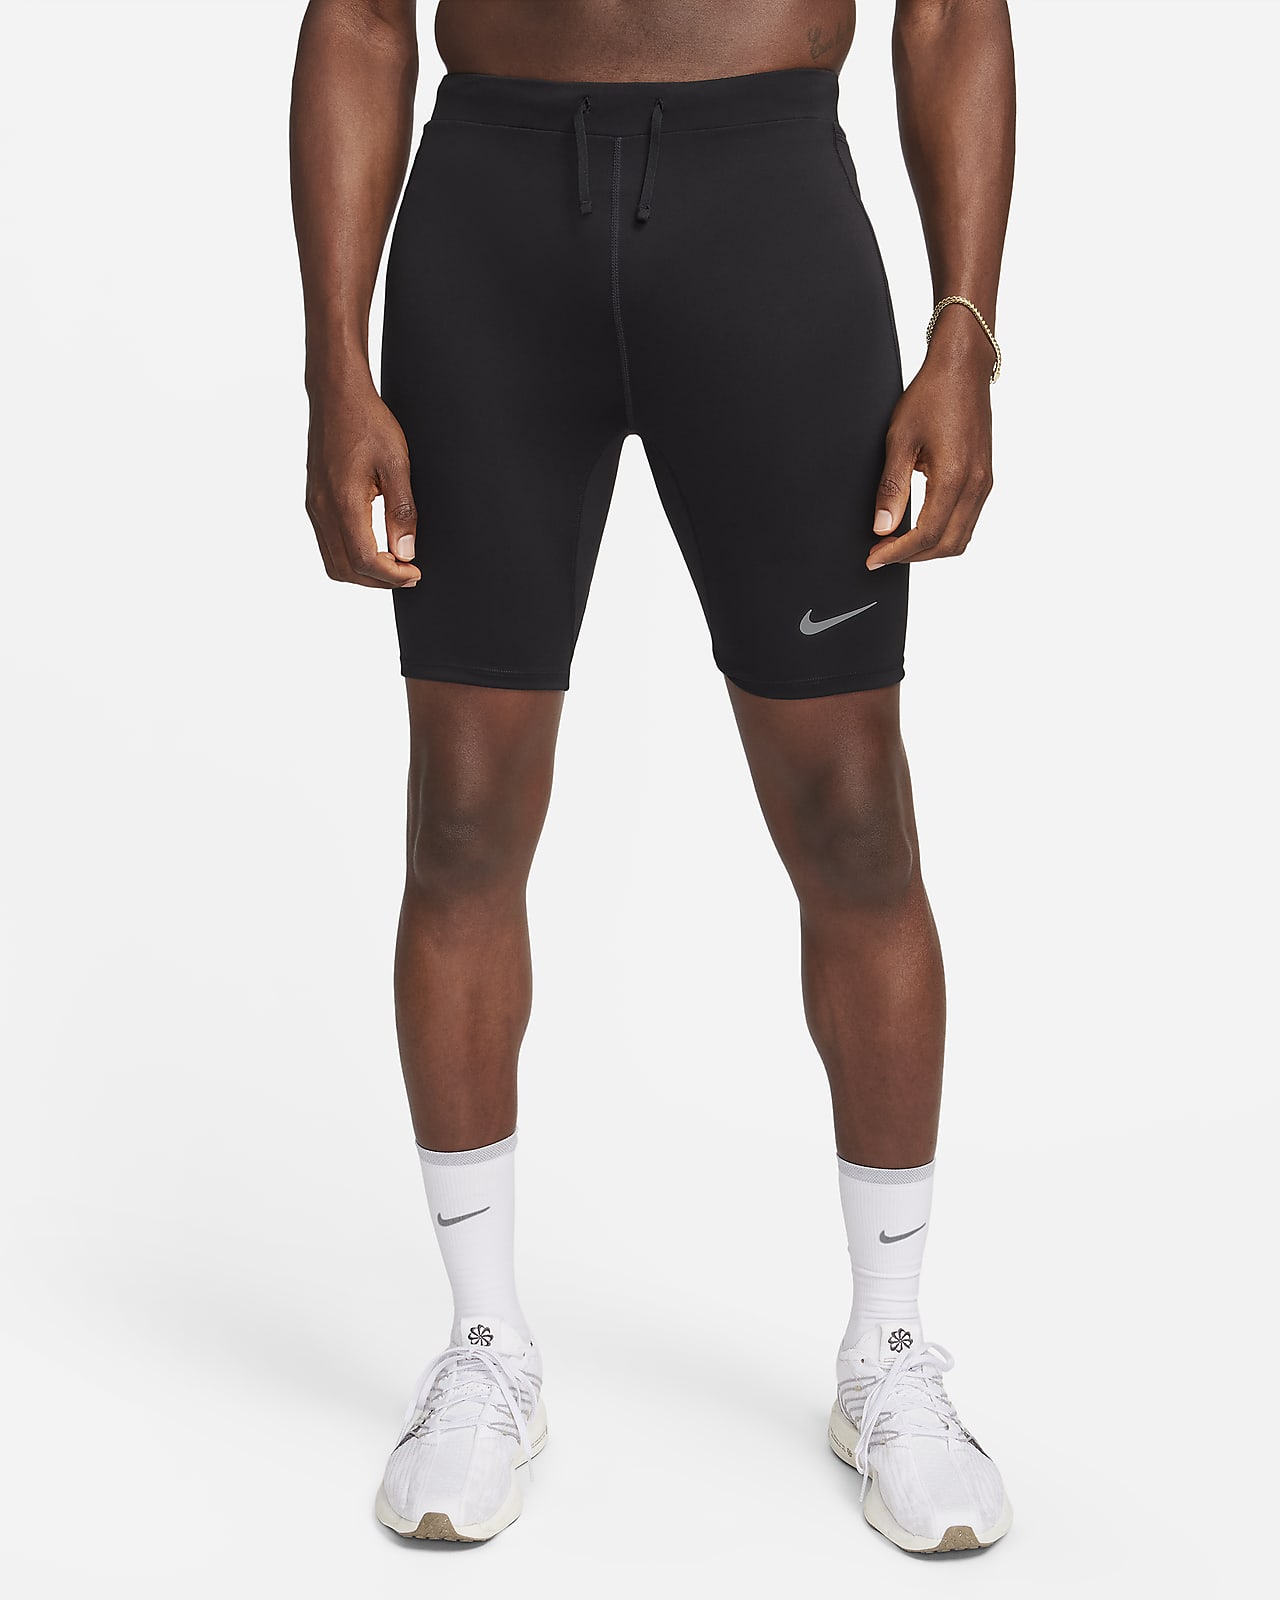 Męskie legginsy z wszytą bielizną do biegania o długości 1/2 Dri-FIT Nike Fast